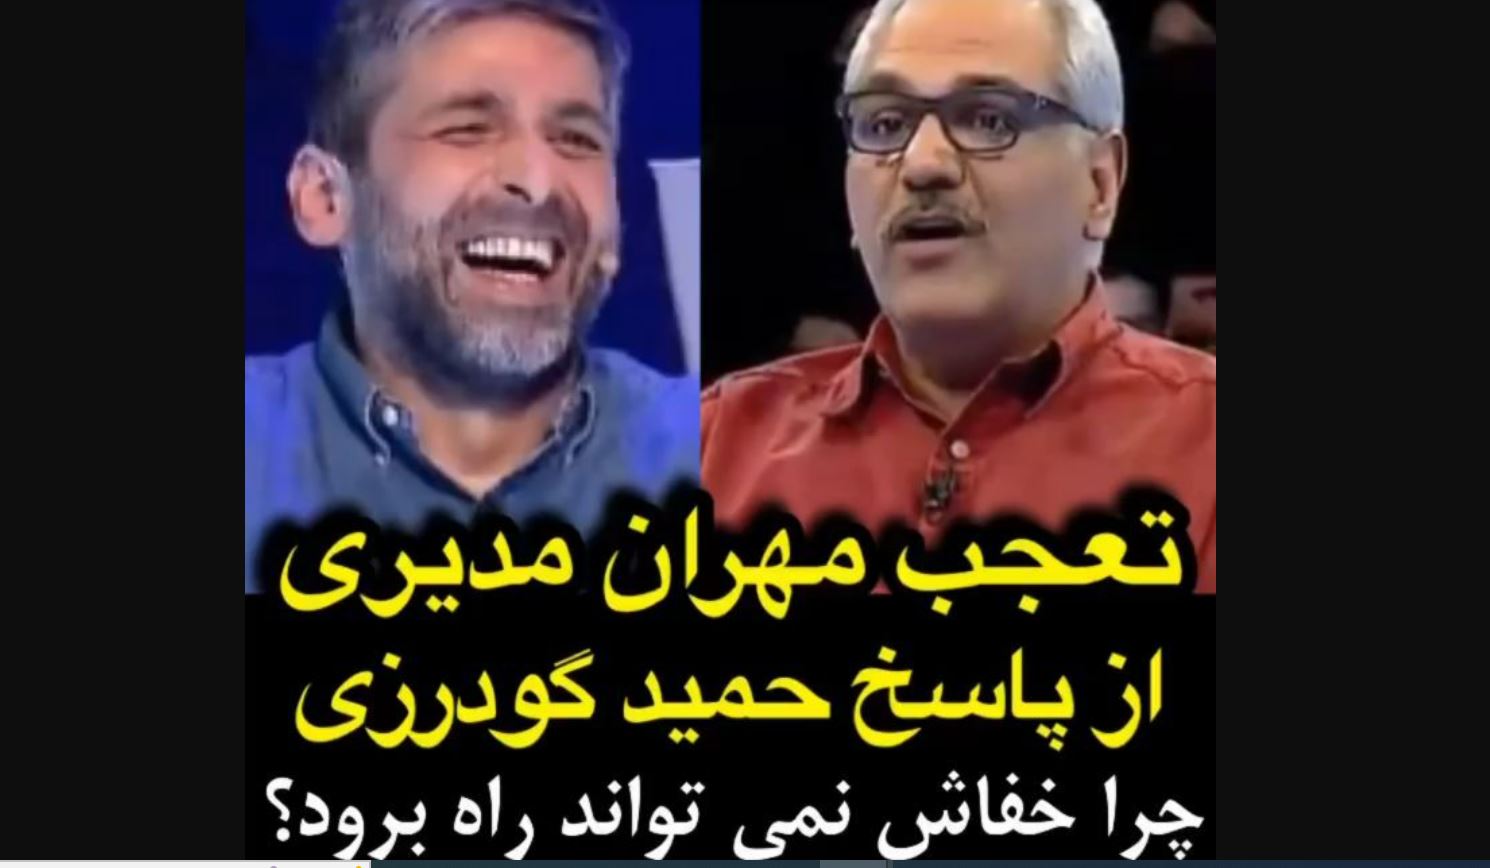 حمید گودرزی مهران مدیری را از خنده ترکاند! + فیلم